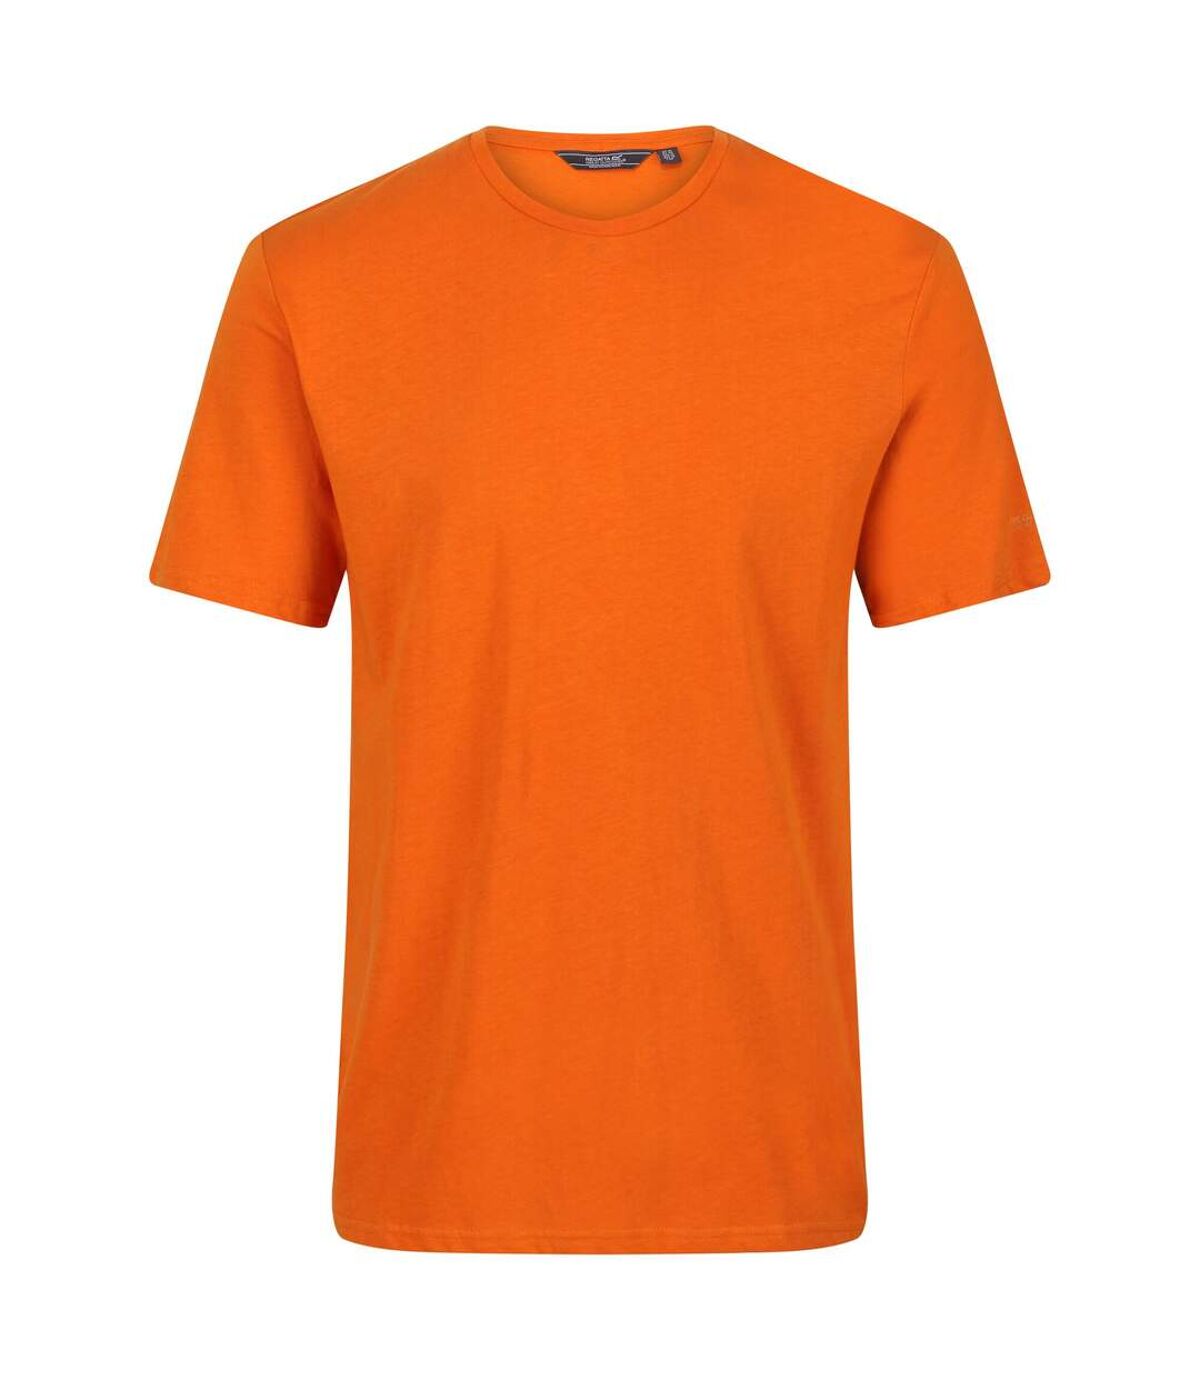 Regatta Mens Tait Lightweight Active T-Shirt (Fox) - UTRG4902